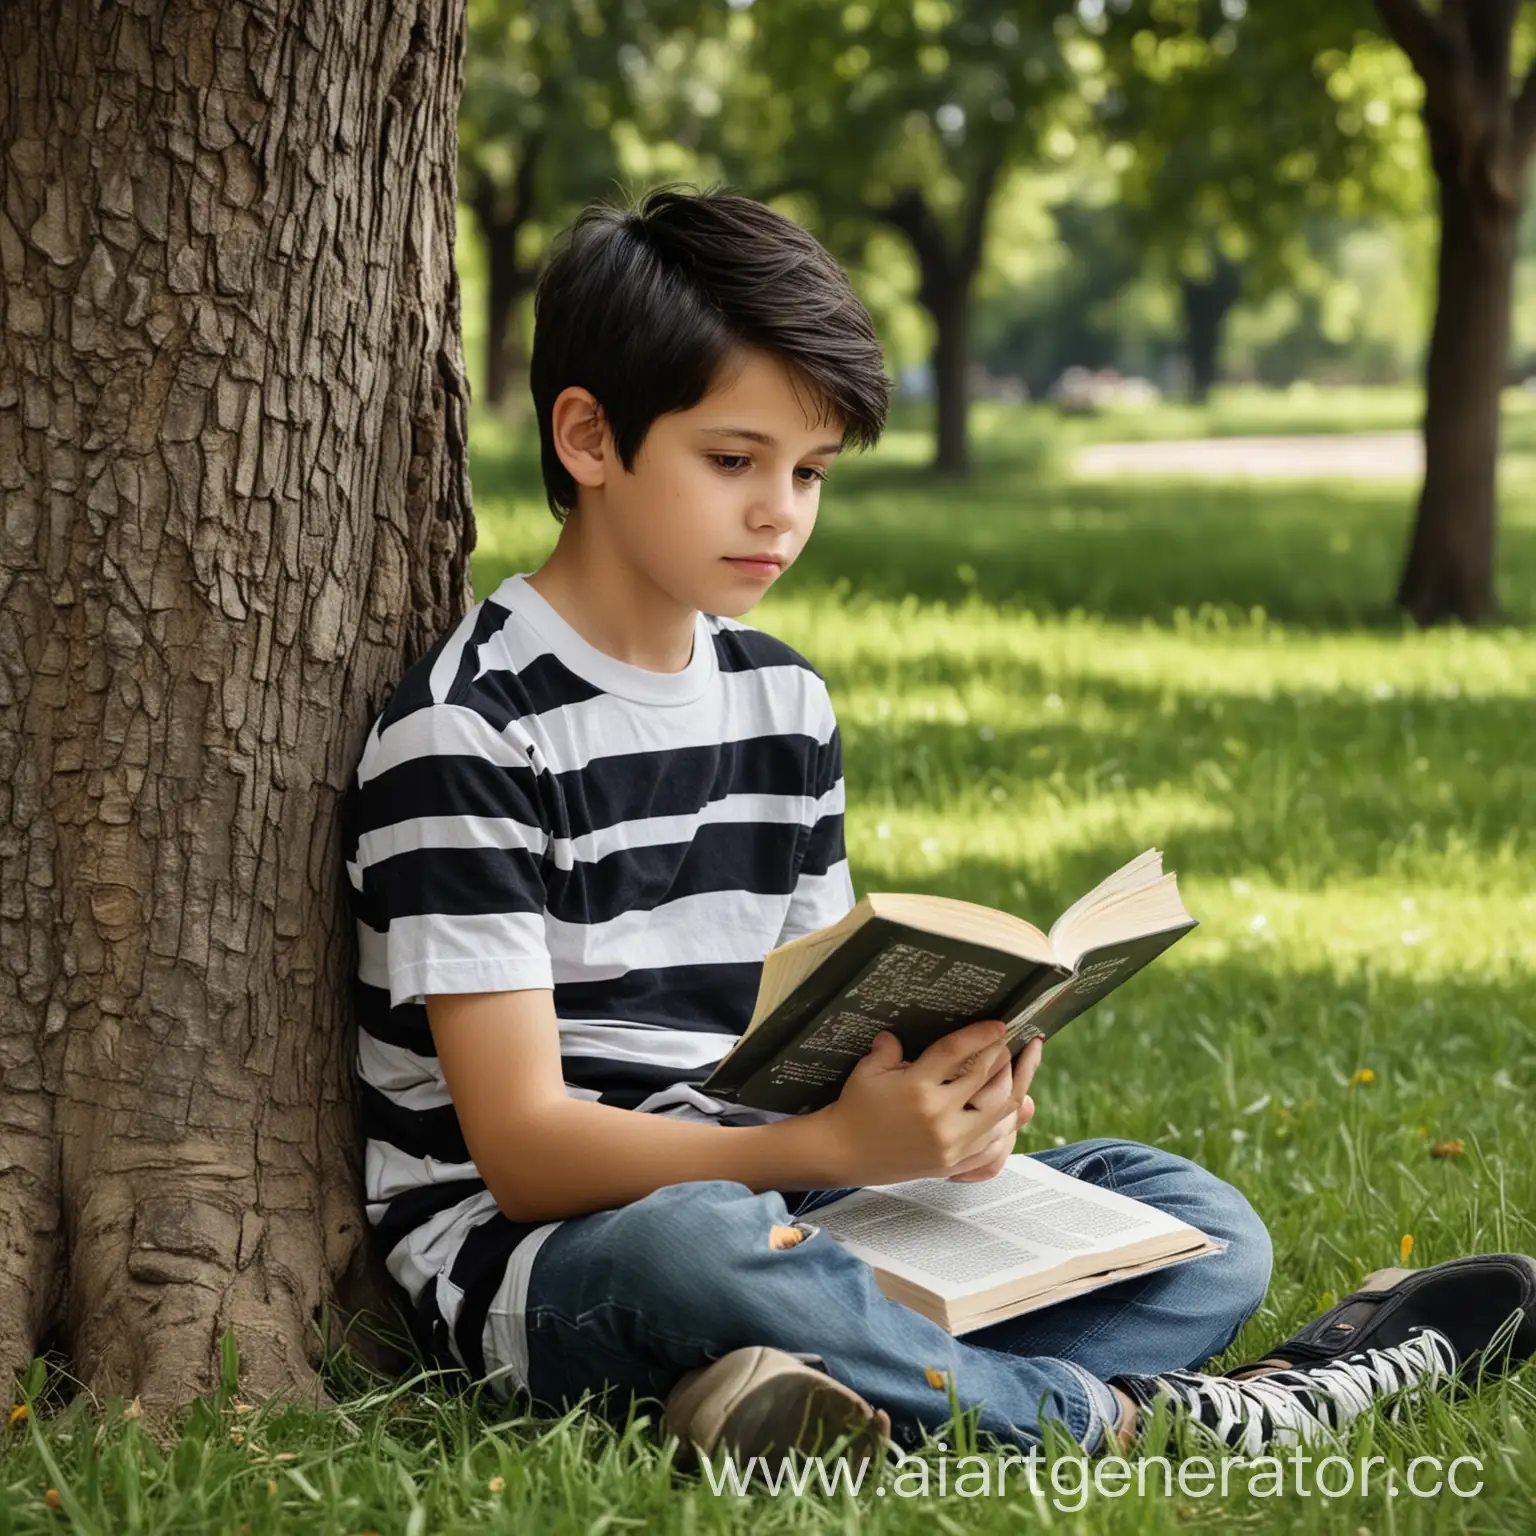 Реальная фотография. Мальчик 13 лет. В полосатой черно-белой футболке с темными волосами сидит на газоне под деревом в парке. Он читает книгу. Лето.